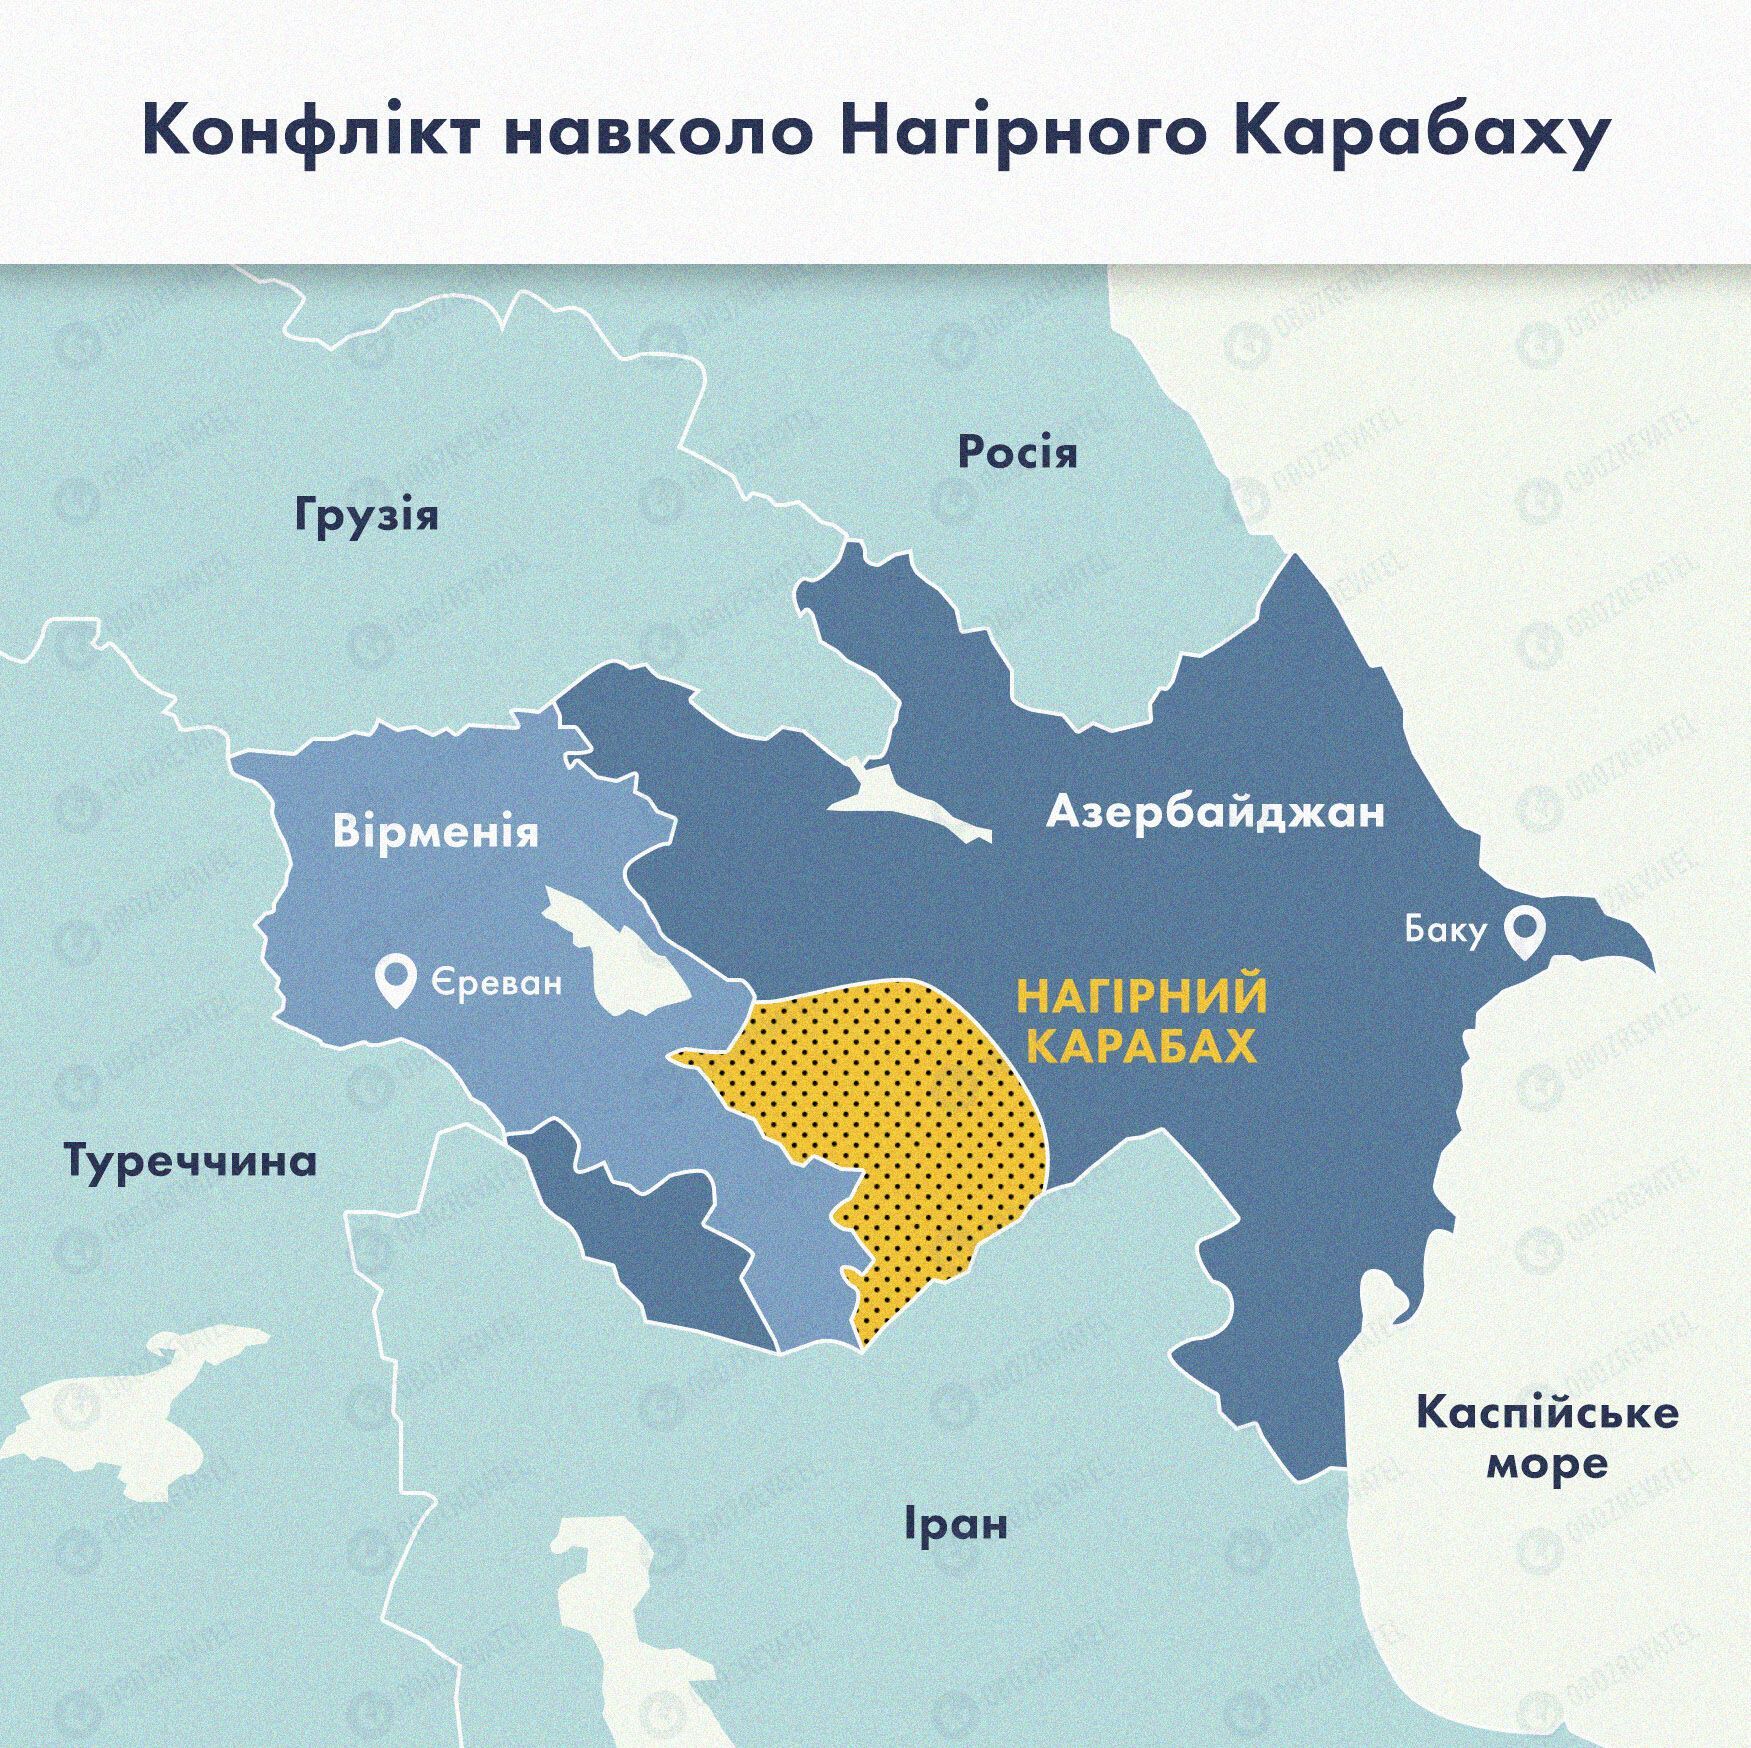 Конфликт вокруг Нагорного Карабаха